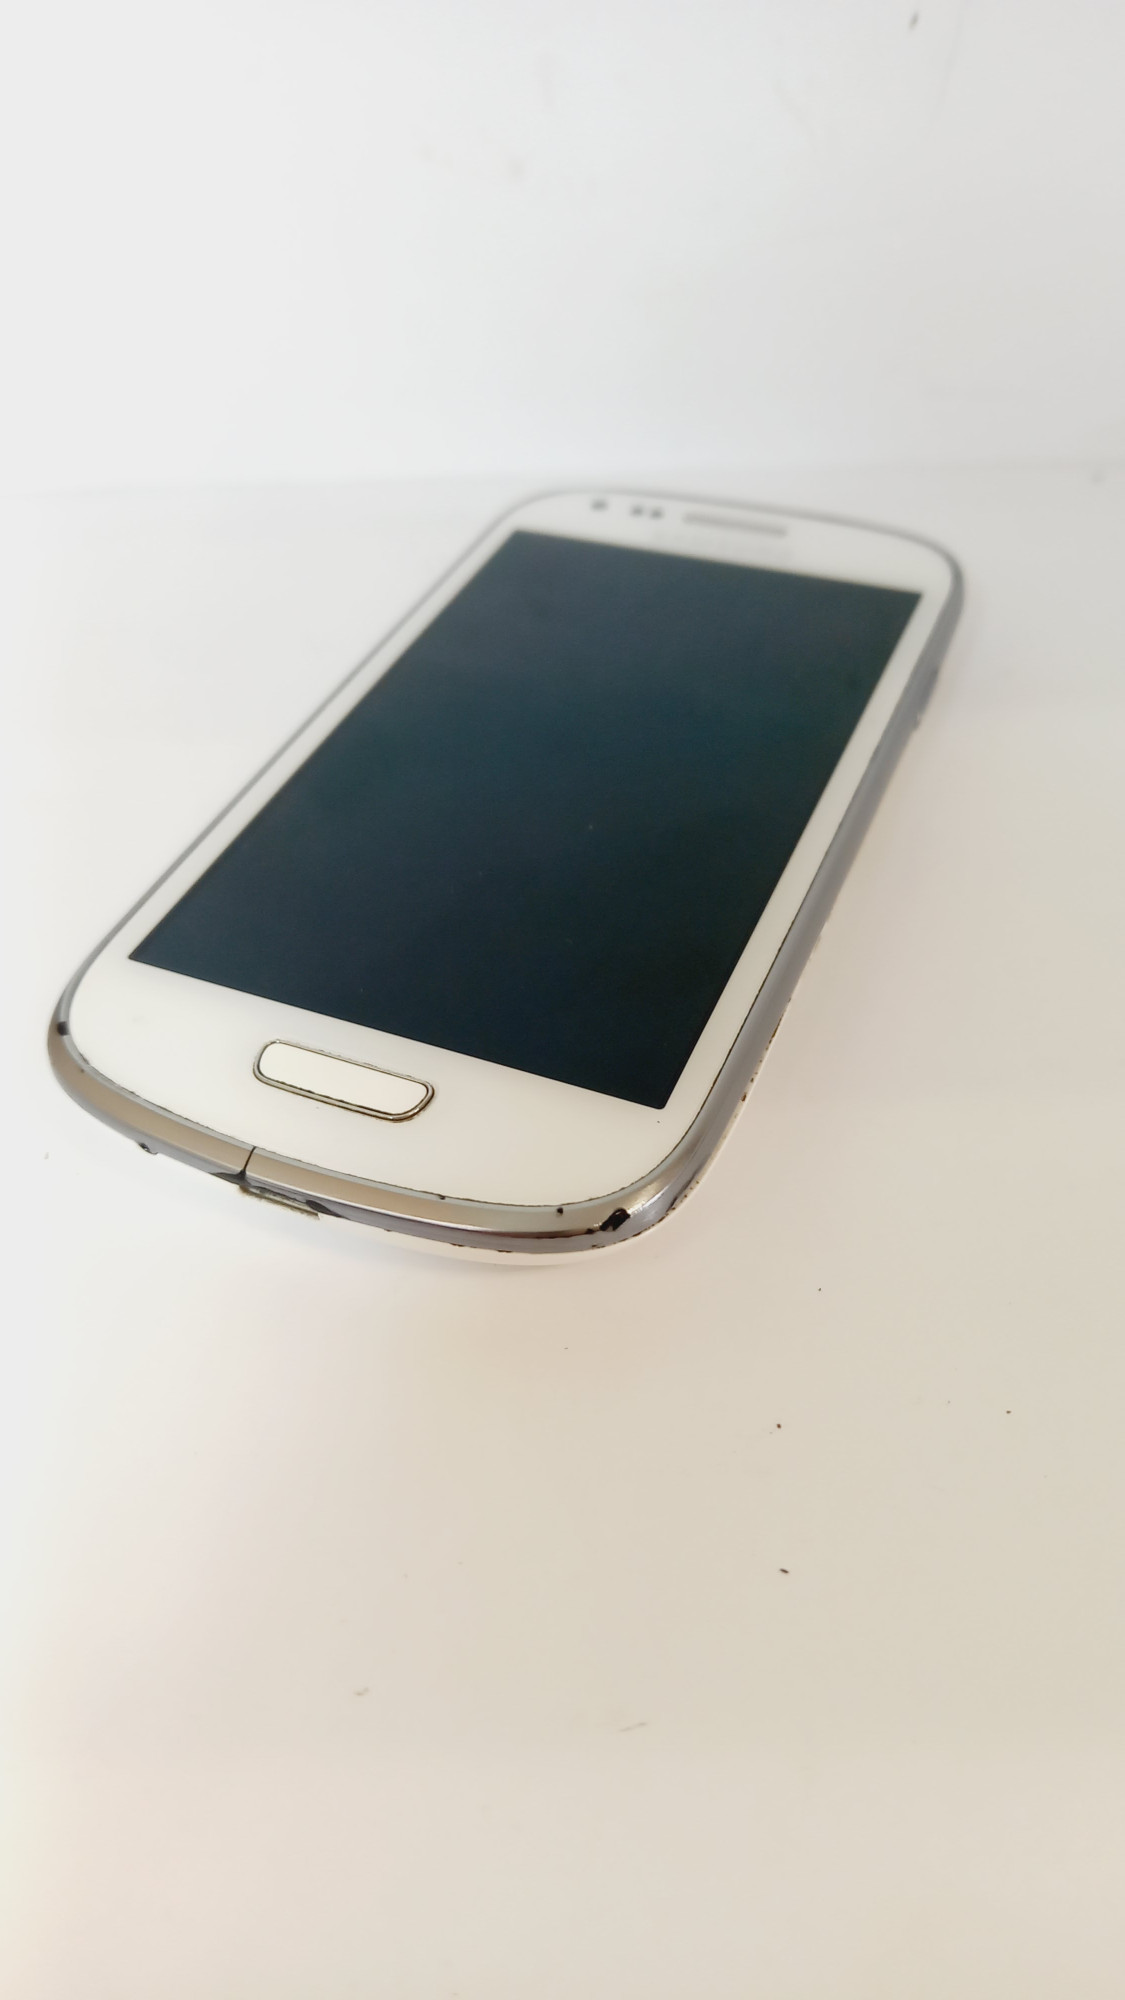 Samsung Galaxy S III mini (GT-I8190) 1/16Gb 4